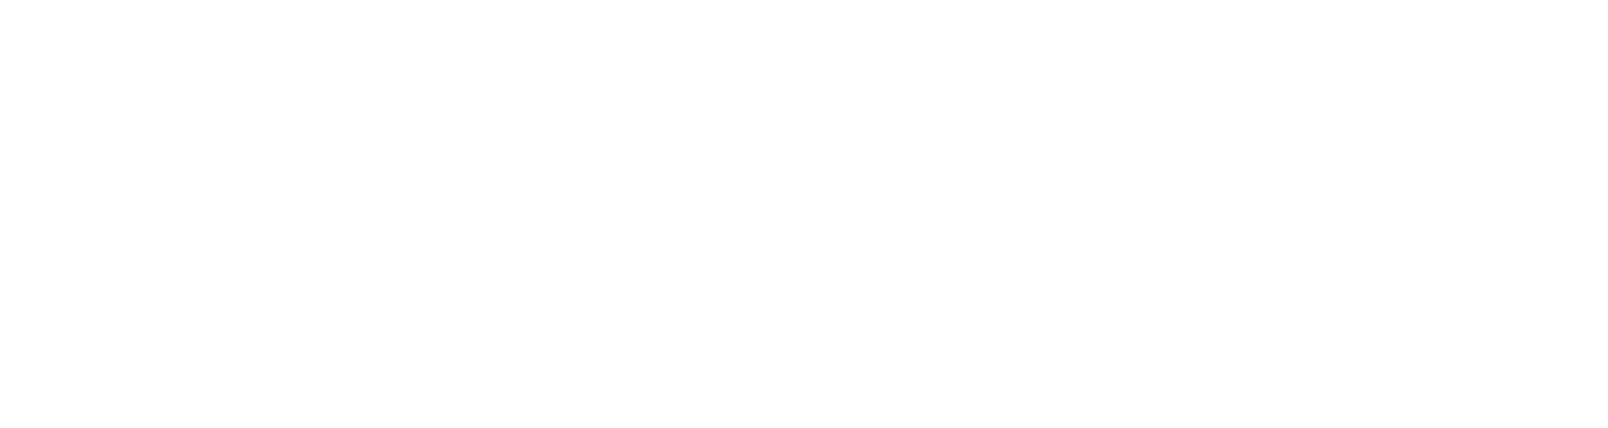 IDEX logo for dark backgrounds (transparent PNG)